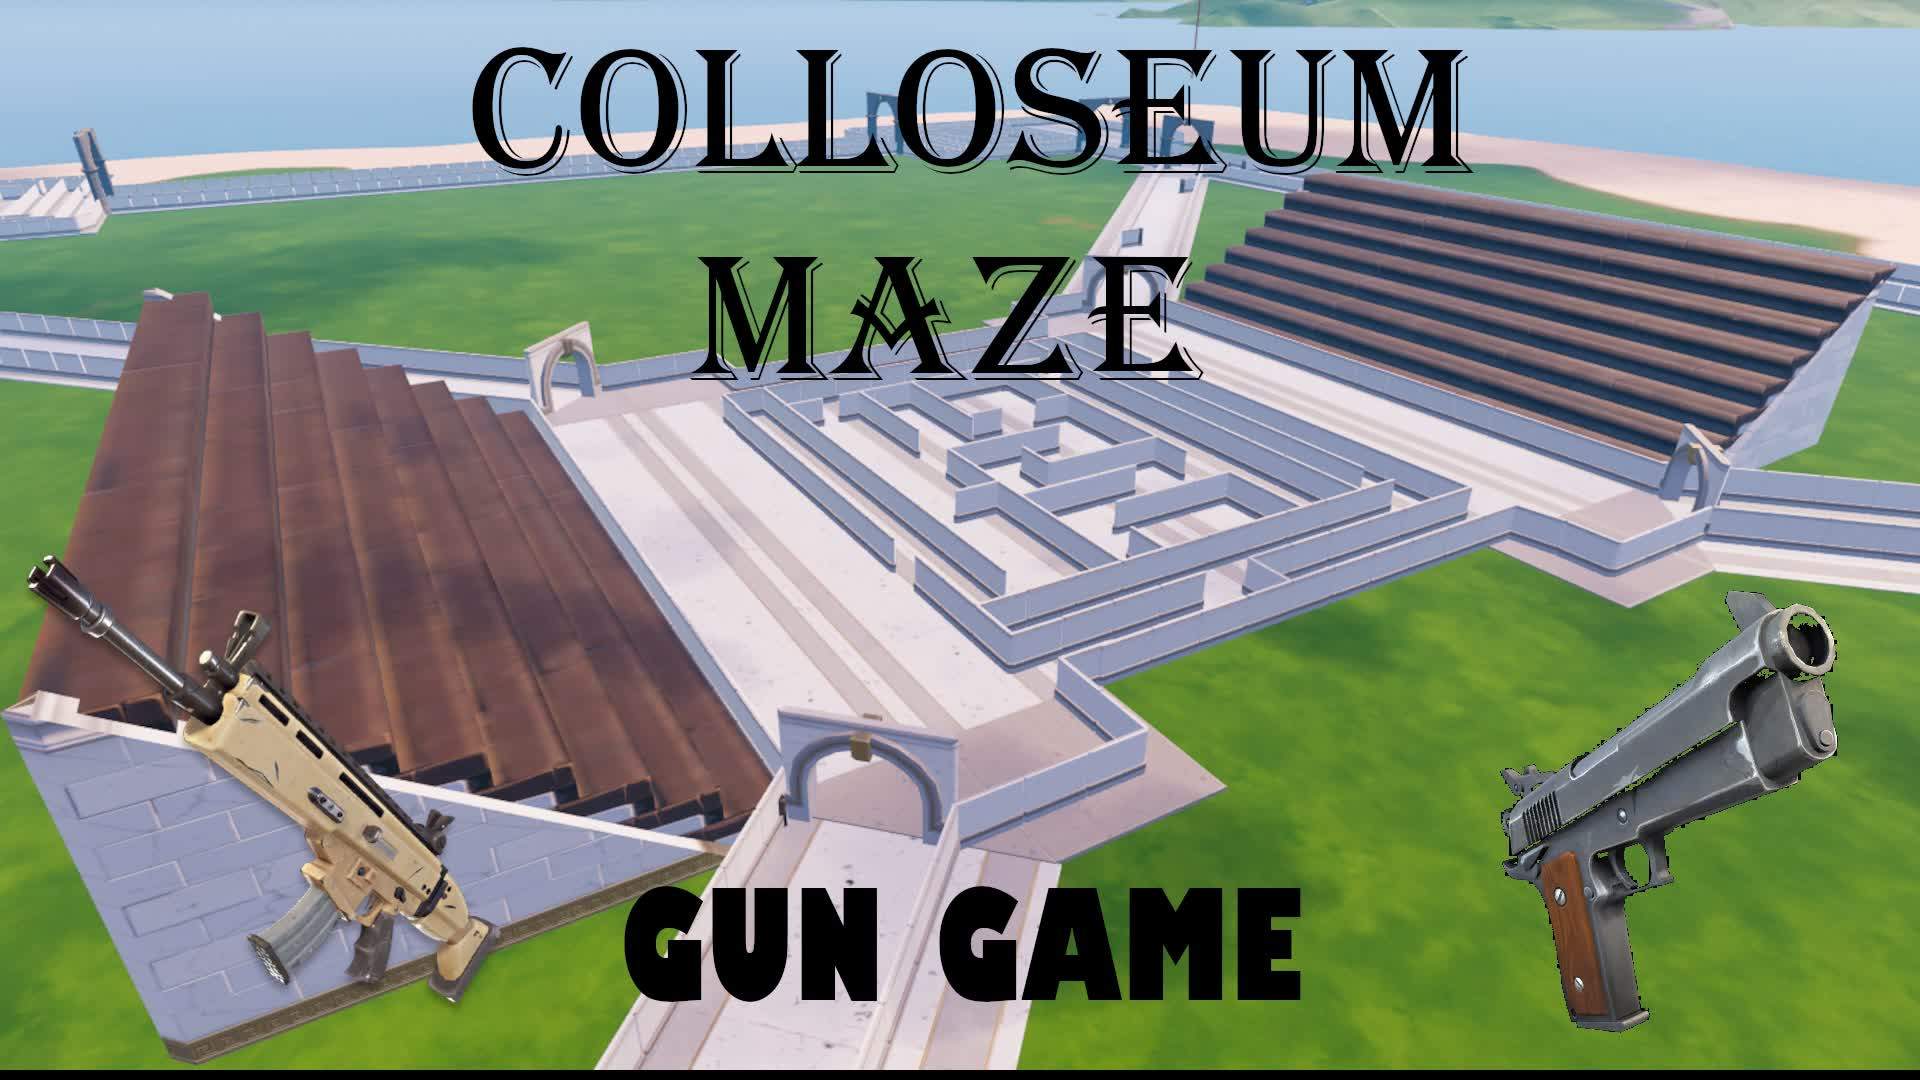 Colosseum Maze Gun Game!